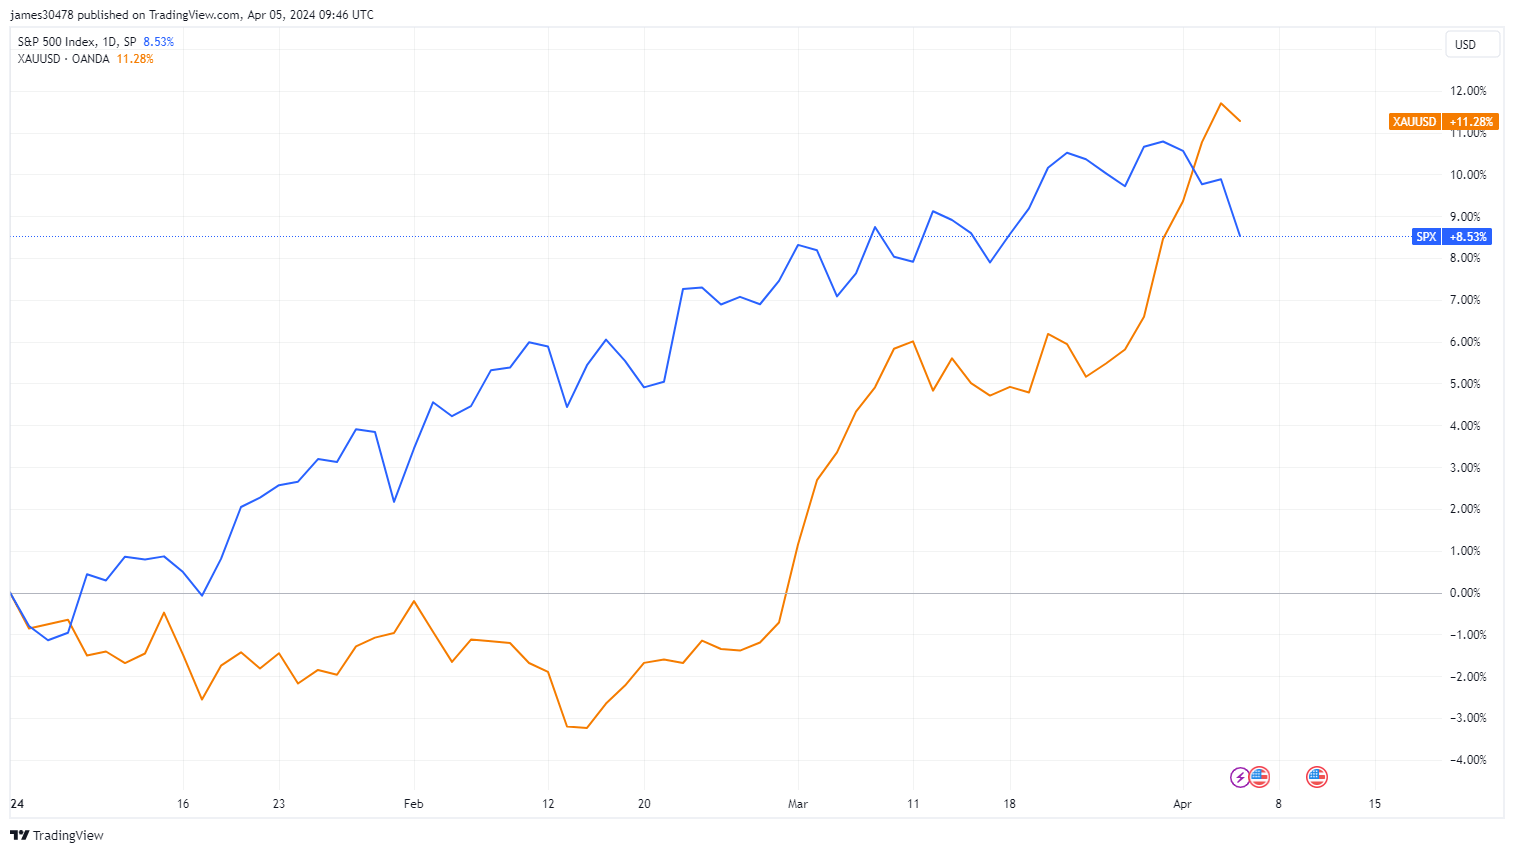 Gold vs SPX: (Source: TradingView)